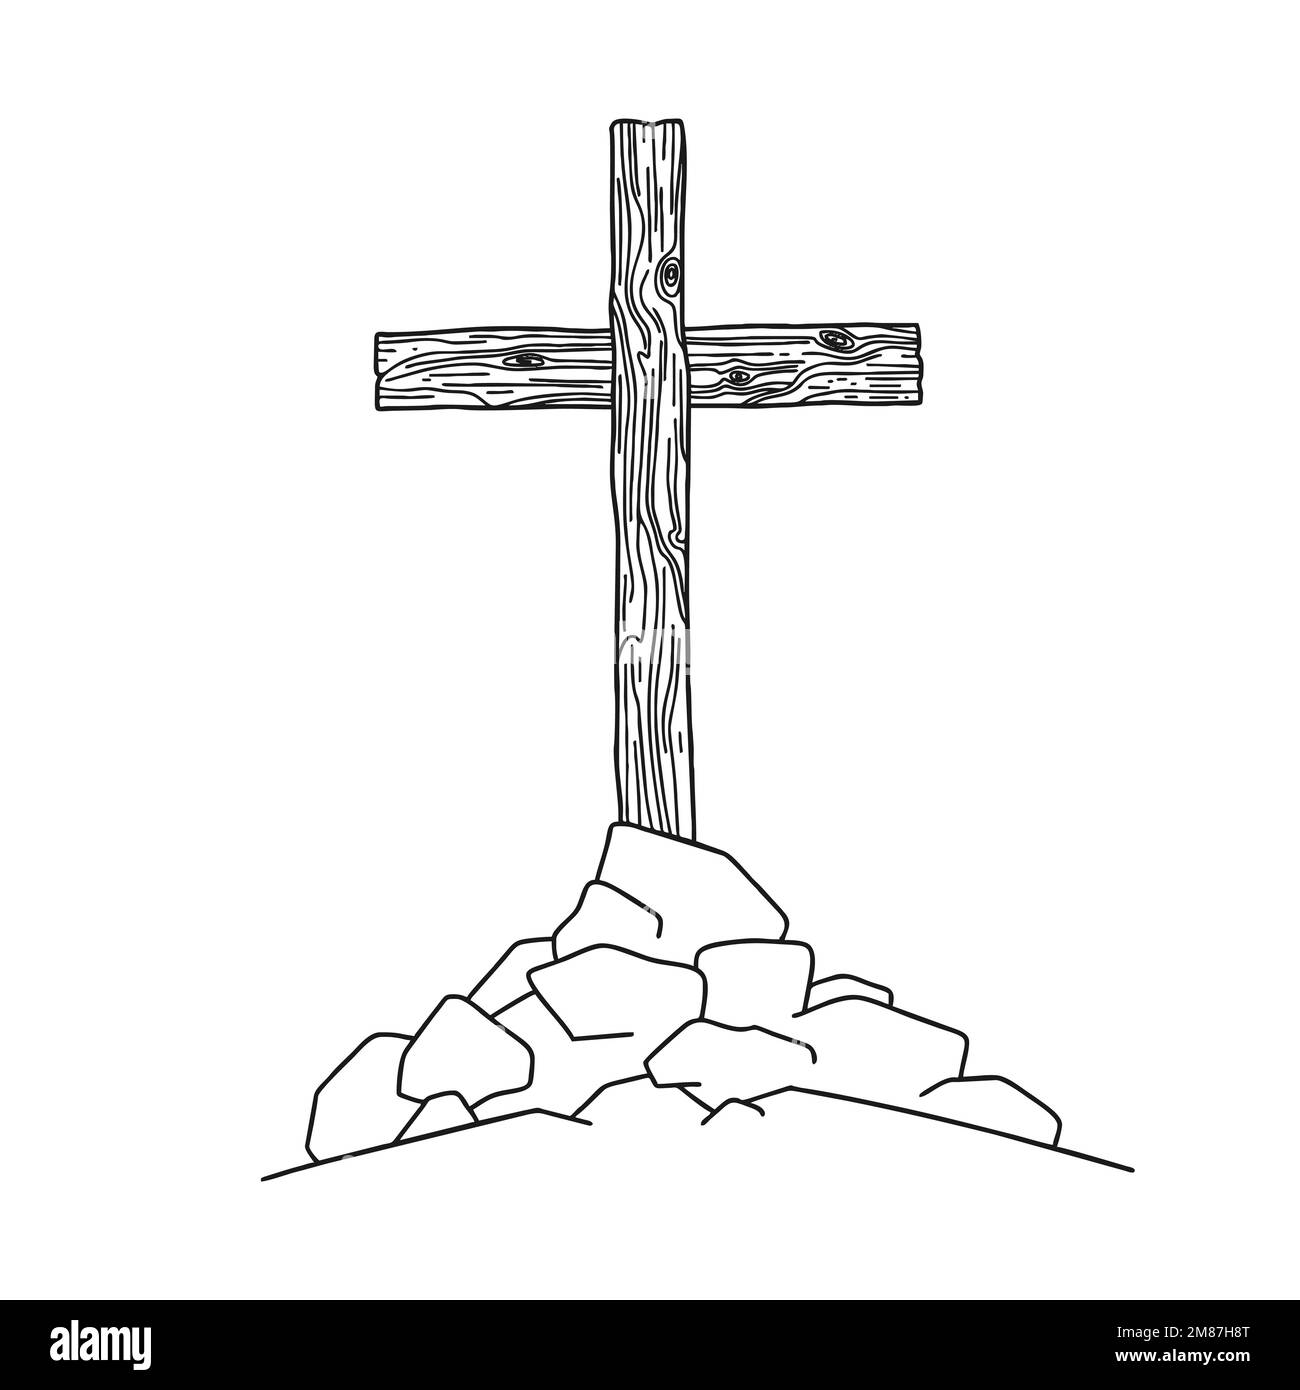 Handgezeichnete christliche Vektordarstellung. Holzkreuz auf einem Hügel. Ein Symbol der Kreuzigung des Herrn Jesus Christus. Stock Vektor